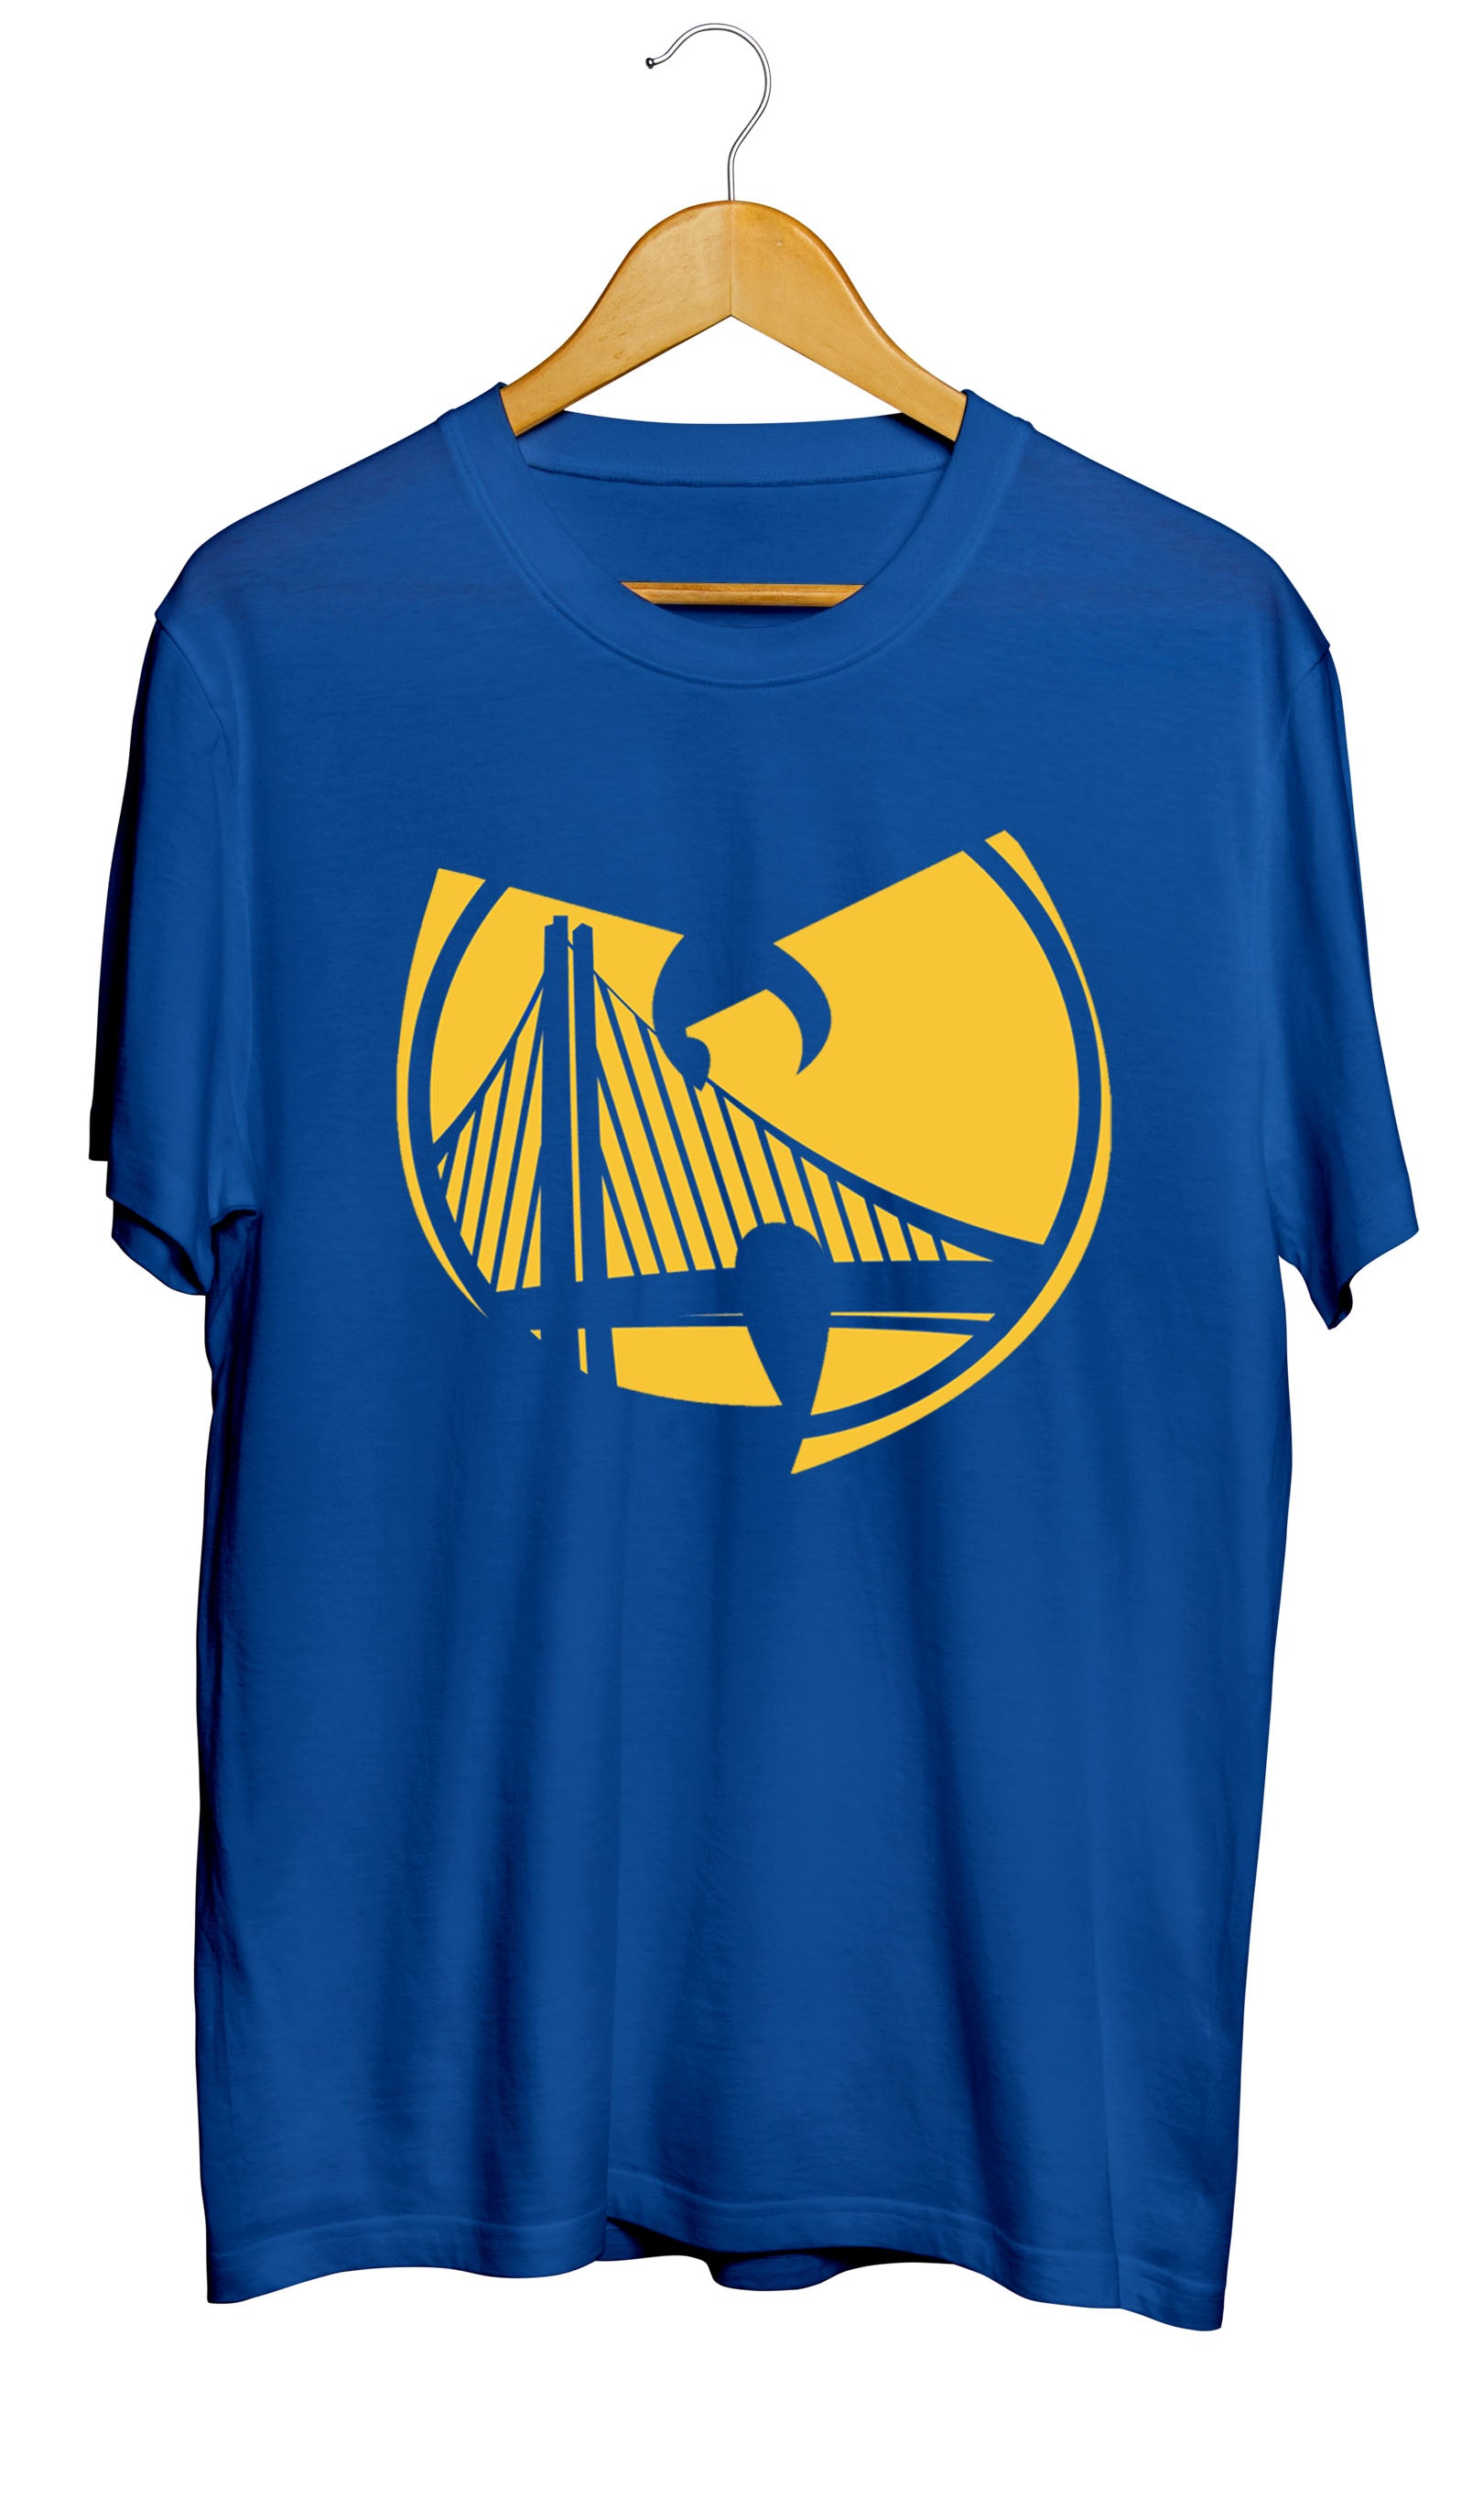 Golden State Warriors Shirt 